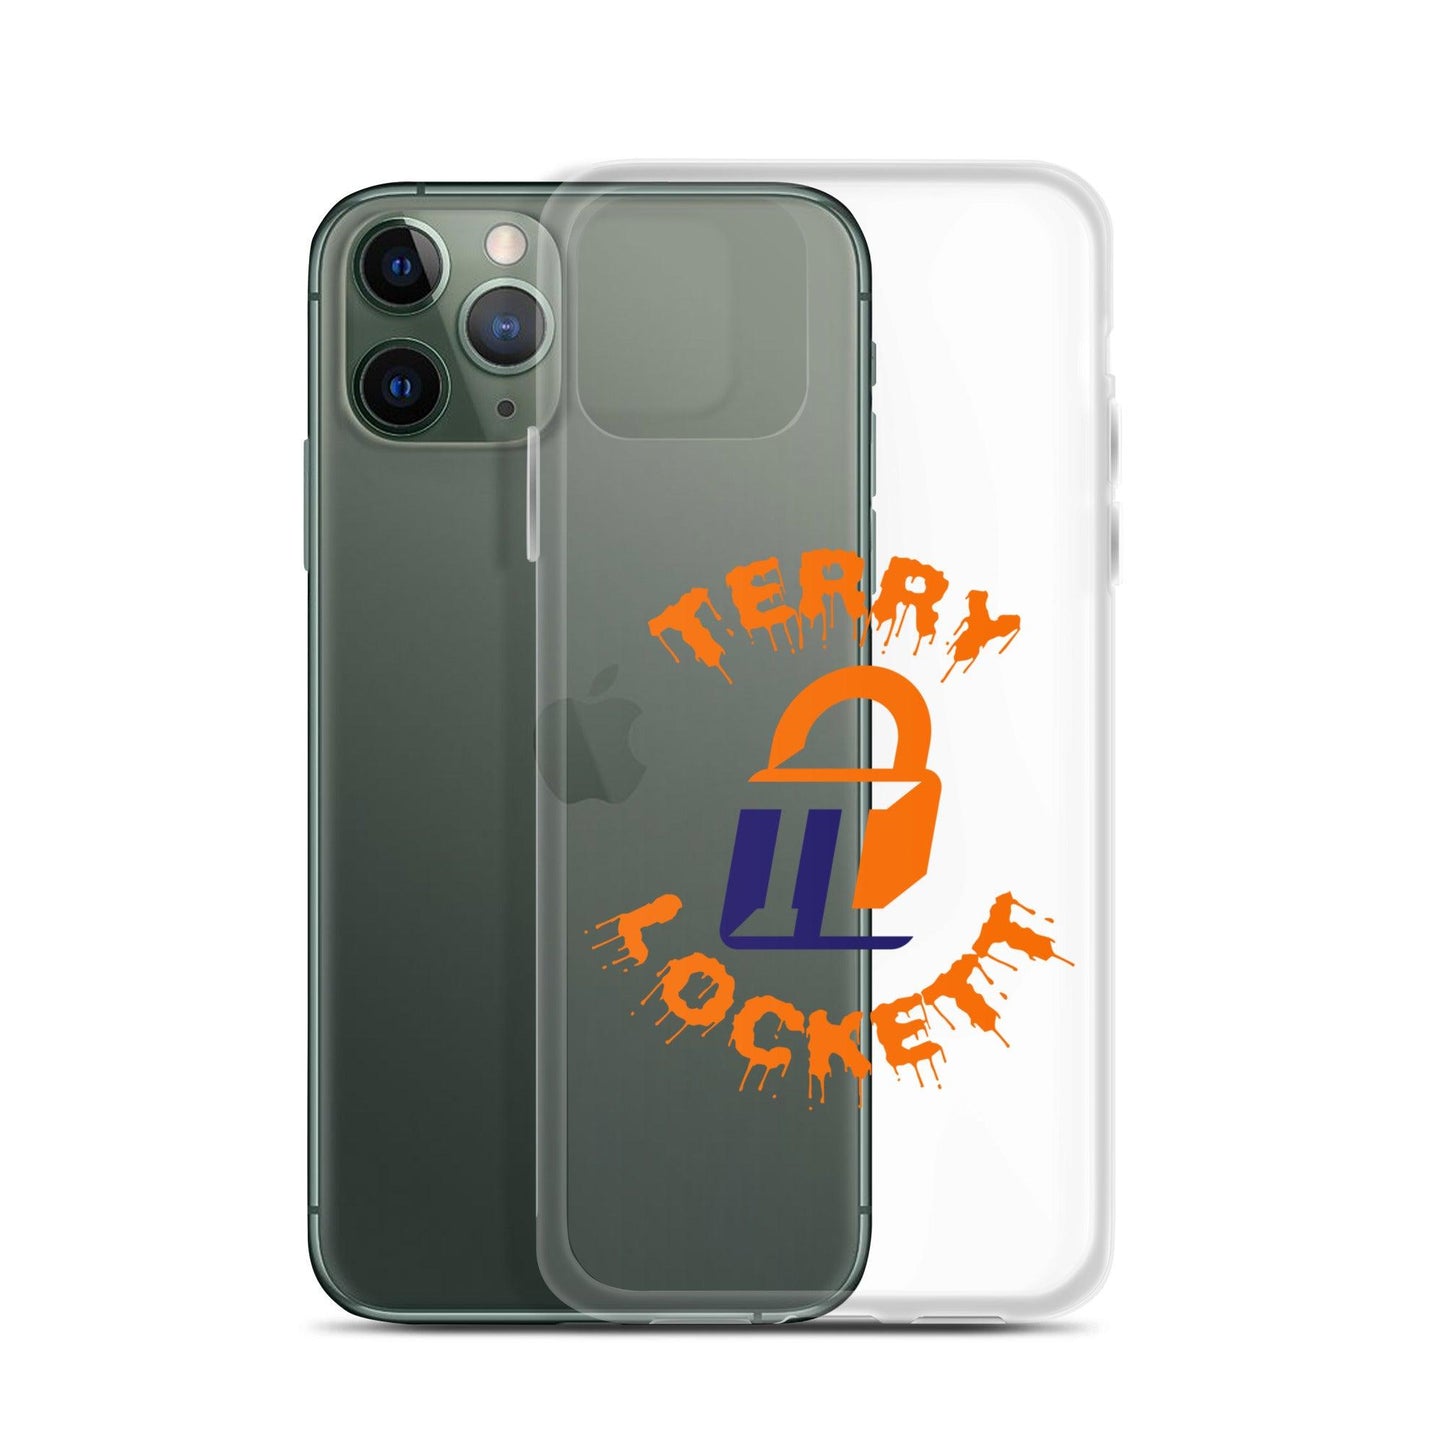 Terry Lockett "Elite" iPhone Case - Fan Arch